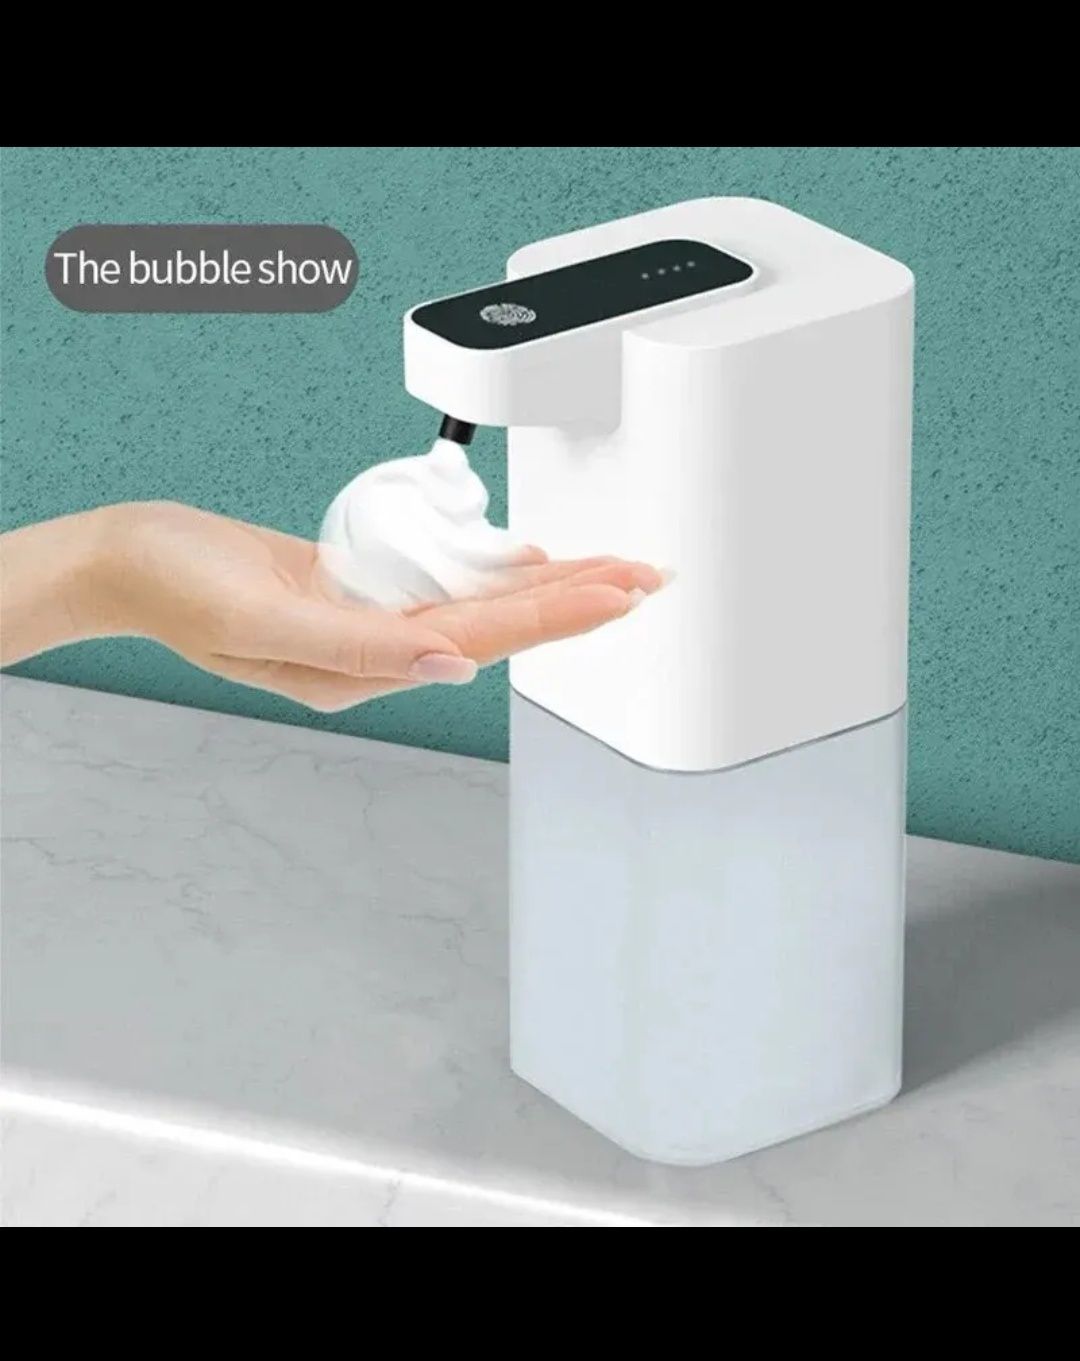 Автоматический дозатор для мыла